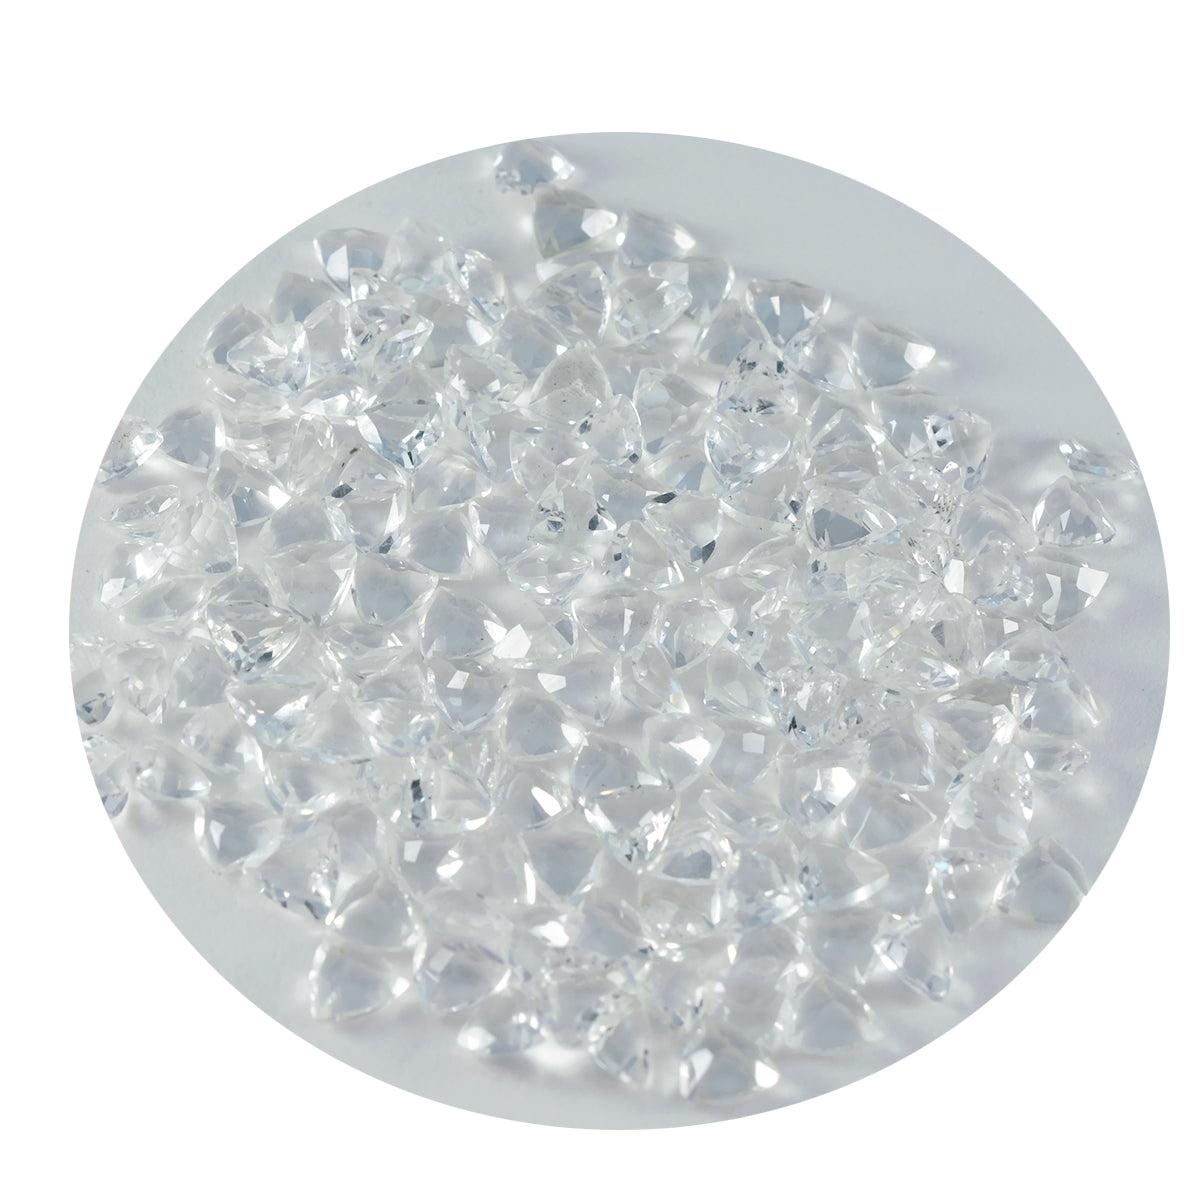 riyogems 1 шт., белые кристаллы кварца, граненые 5x5 мм, форма триллиона, драгоценные камни замечательного качества